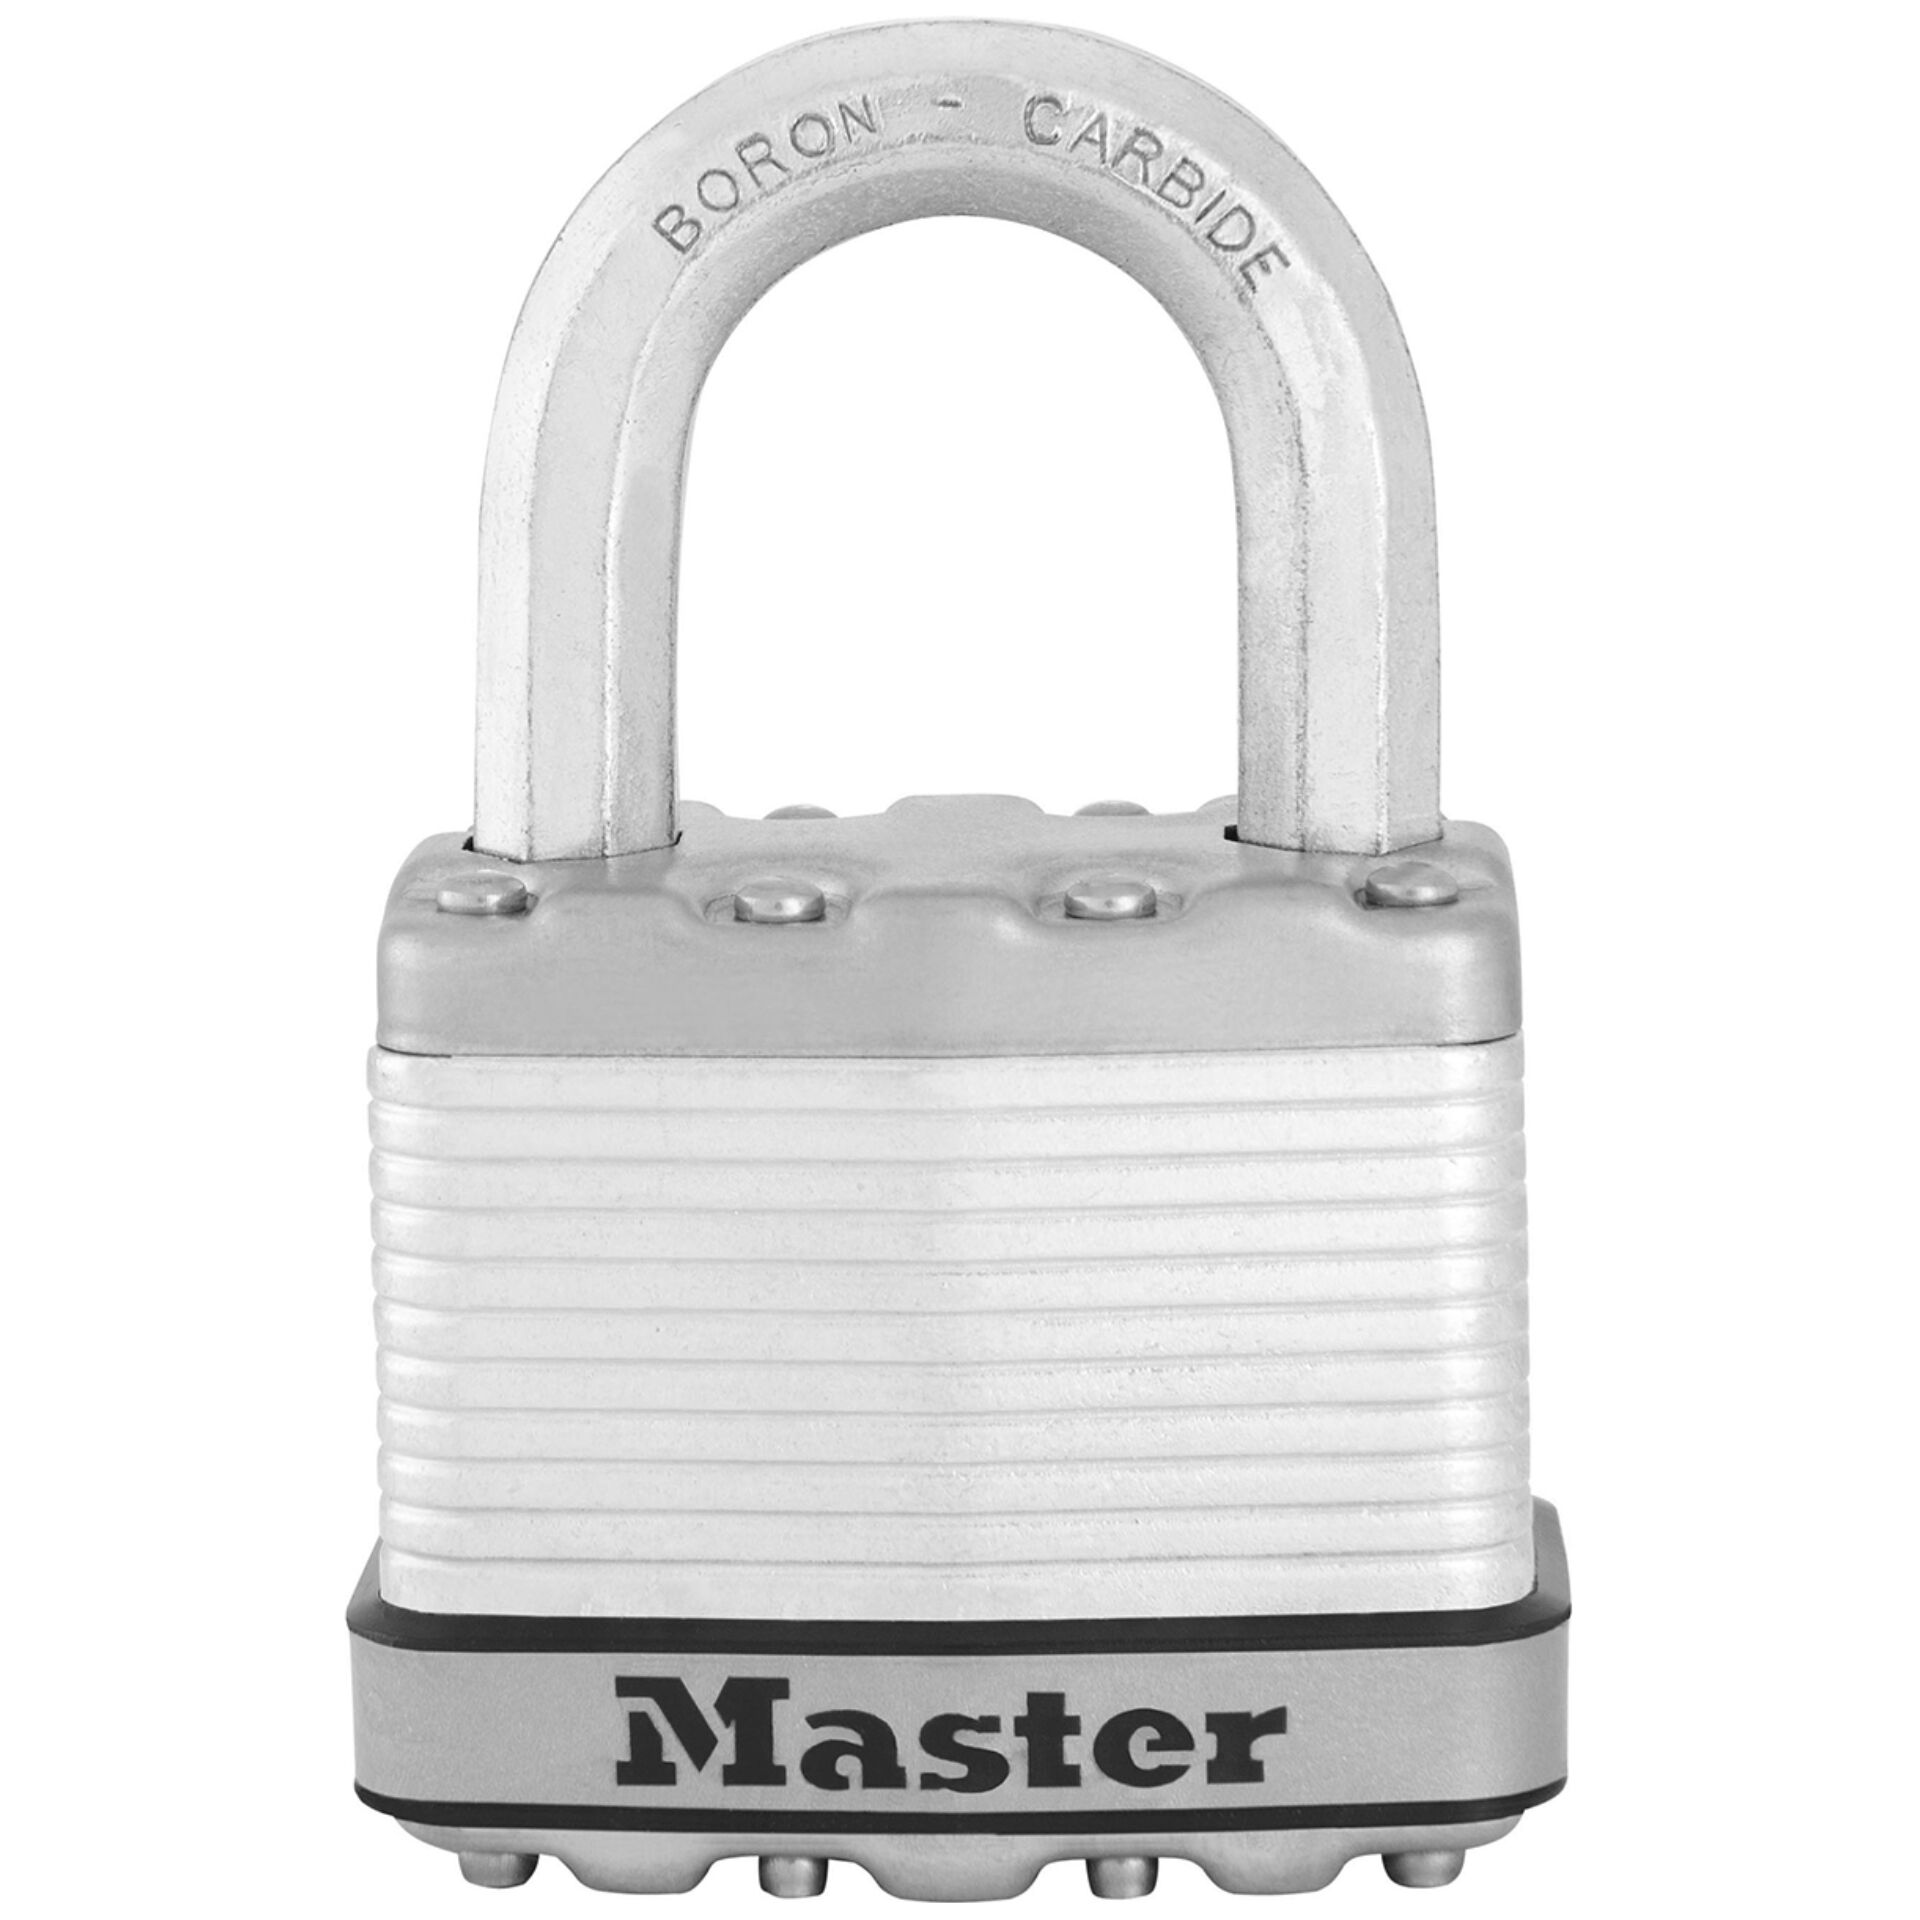 Master Lock lucchetto con livello di sicurezza 9 M5EURDCC